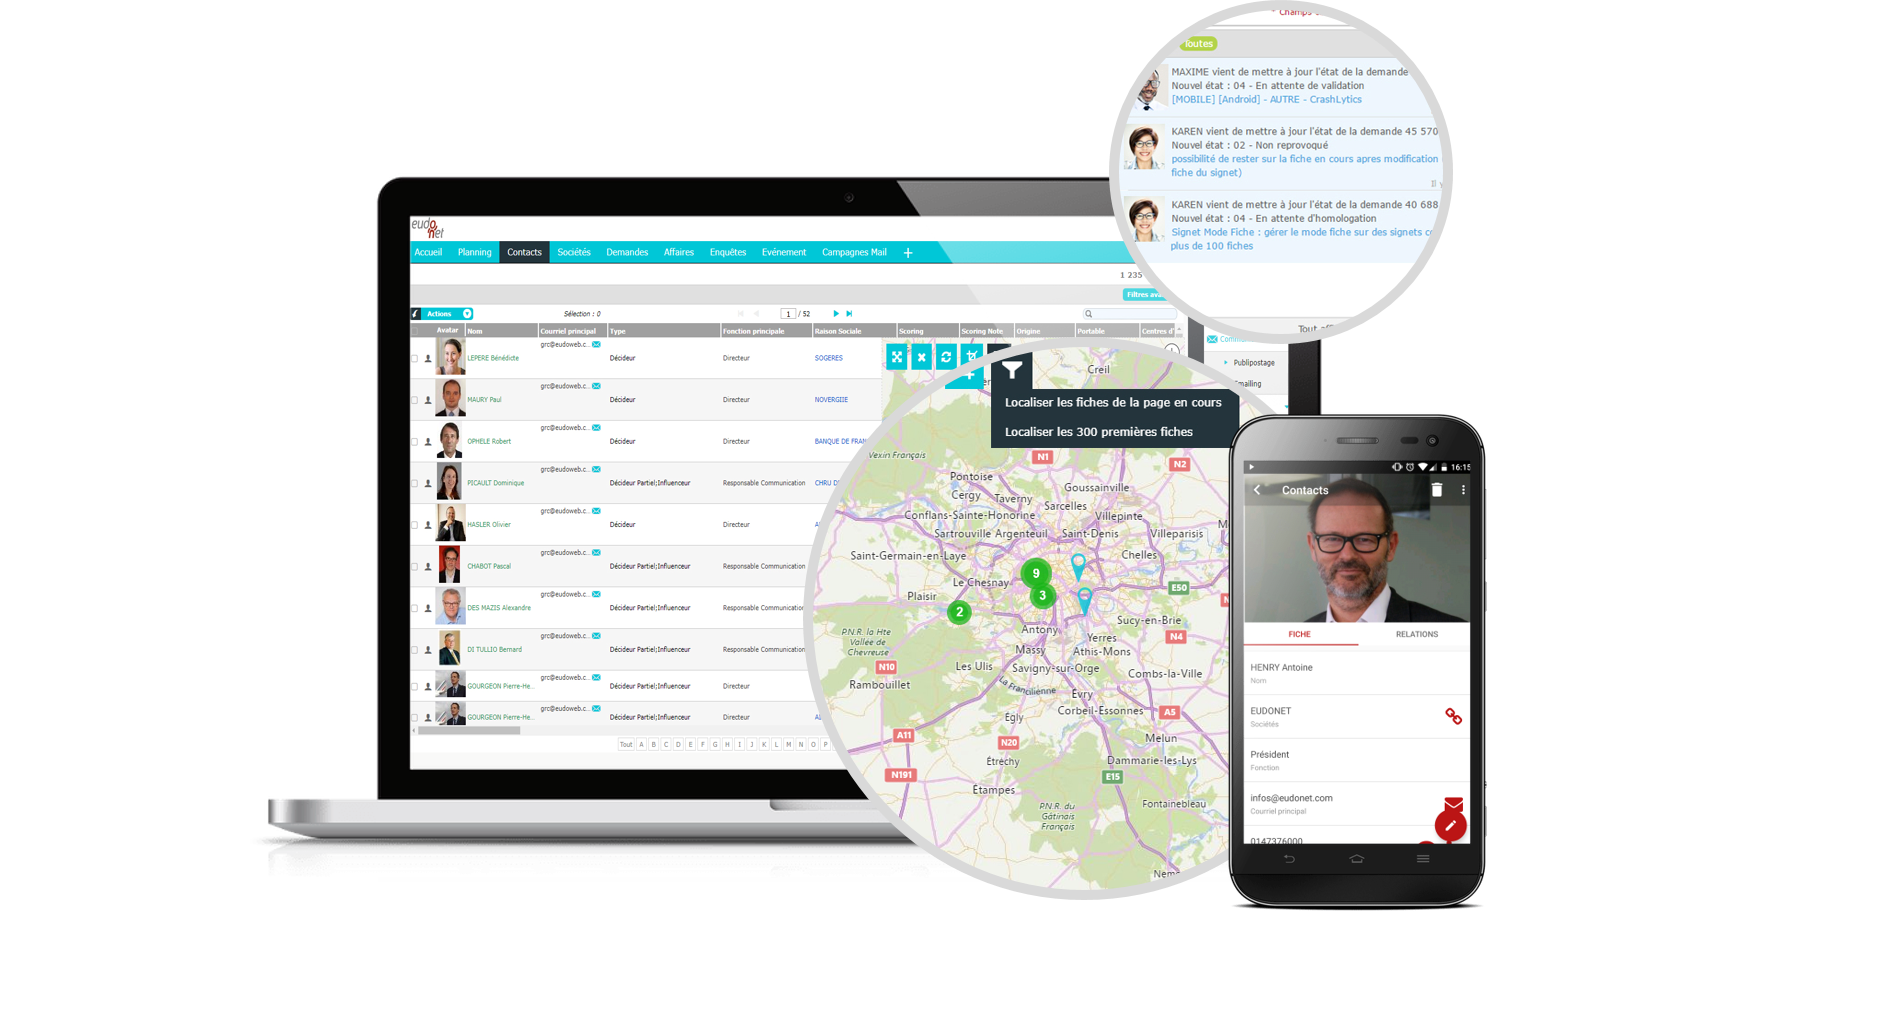 Eudonet CRM - Coloca el CRM en el centro de su sistema de información mediante la conexión a todas sus aplicaciones